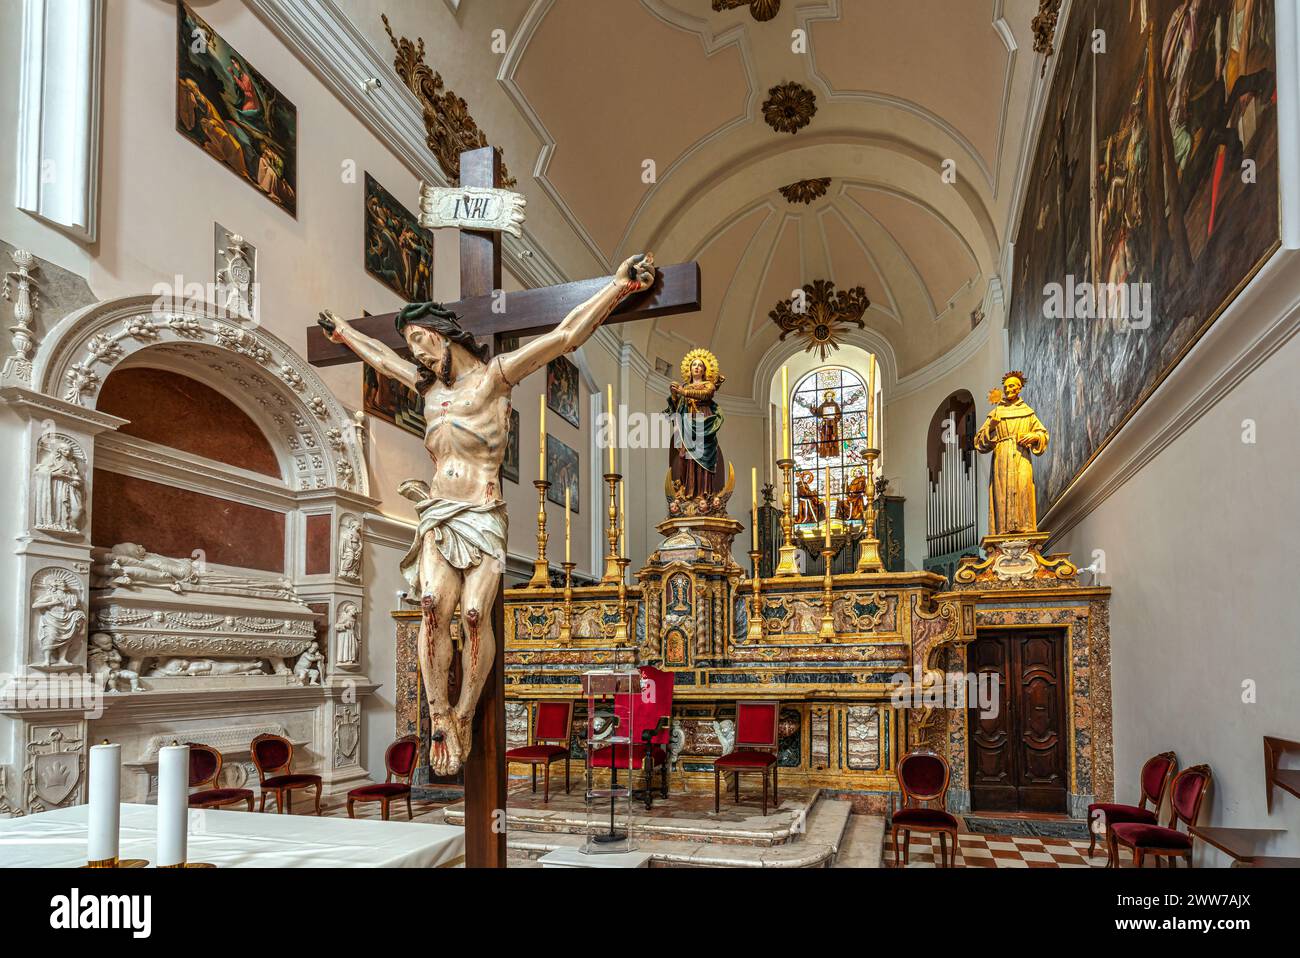 Der Hauptaltar der Basilika San Bernardino mit dem Kruzifix, dem Mausoleum von Maria Pereyra Camponeschi und dem barocken Altar. L'Aquila, Italien Stockfoto